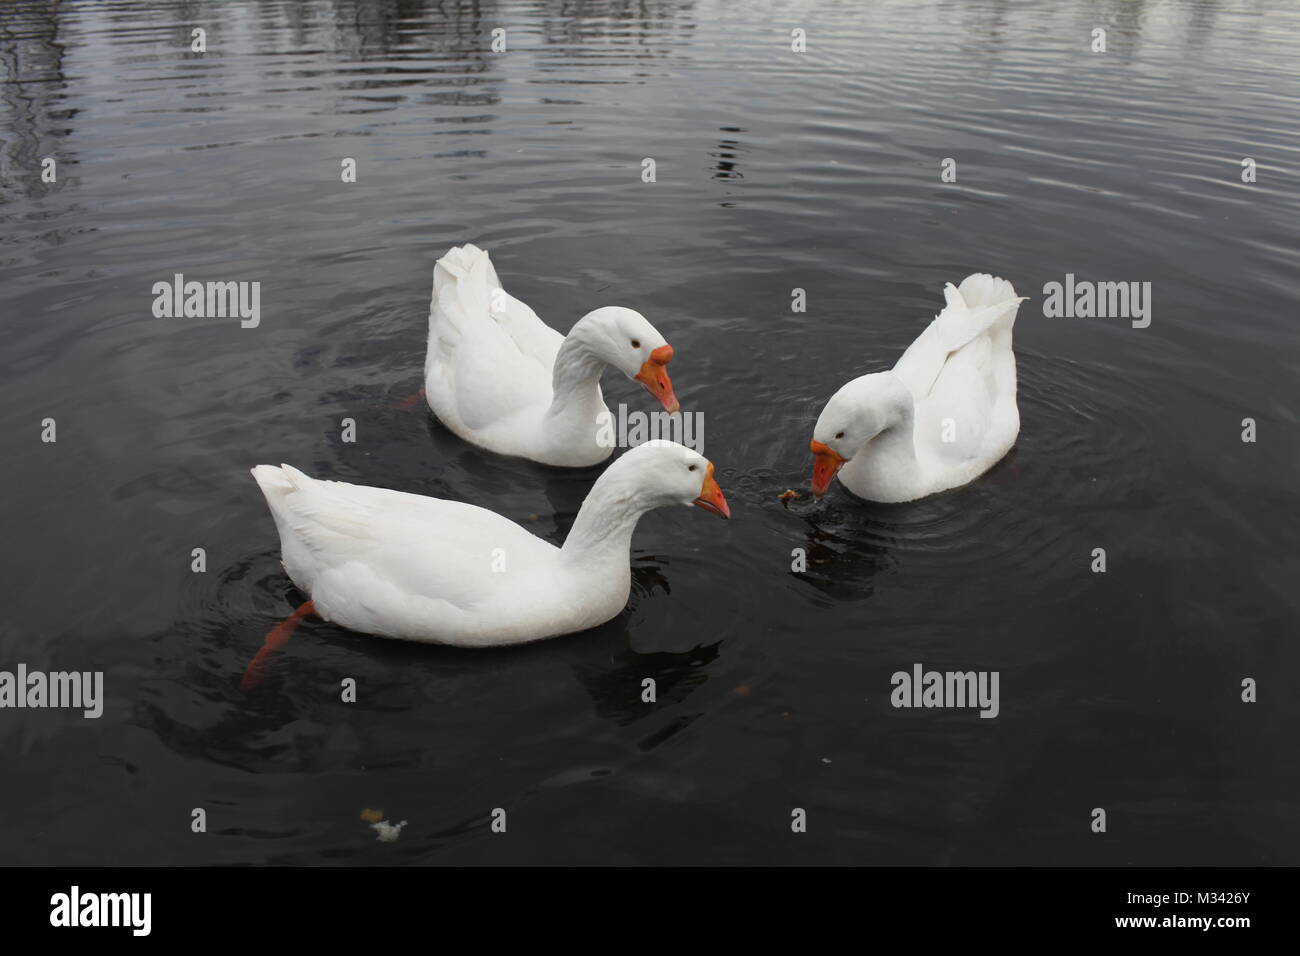 Los gansos blancos flotando en el agua Foto de stock